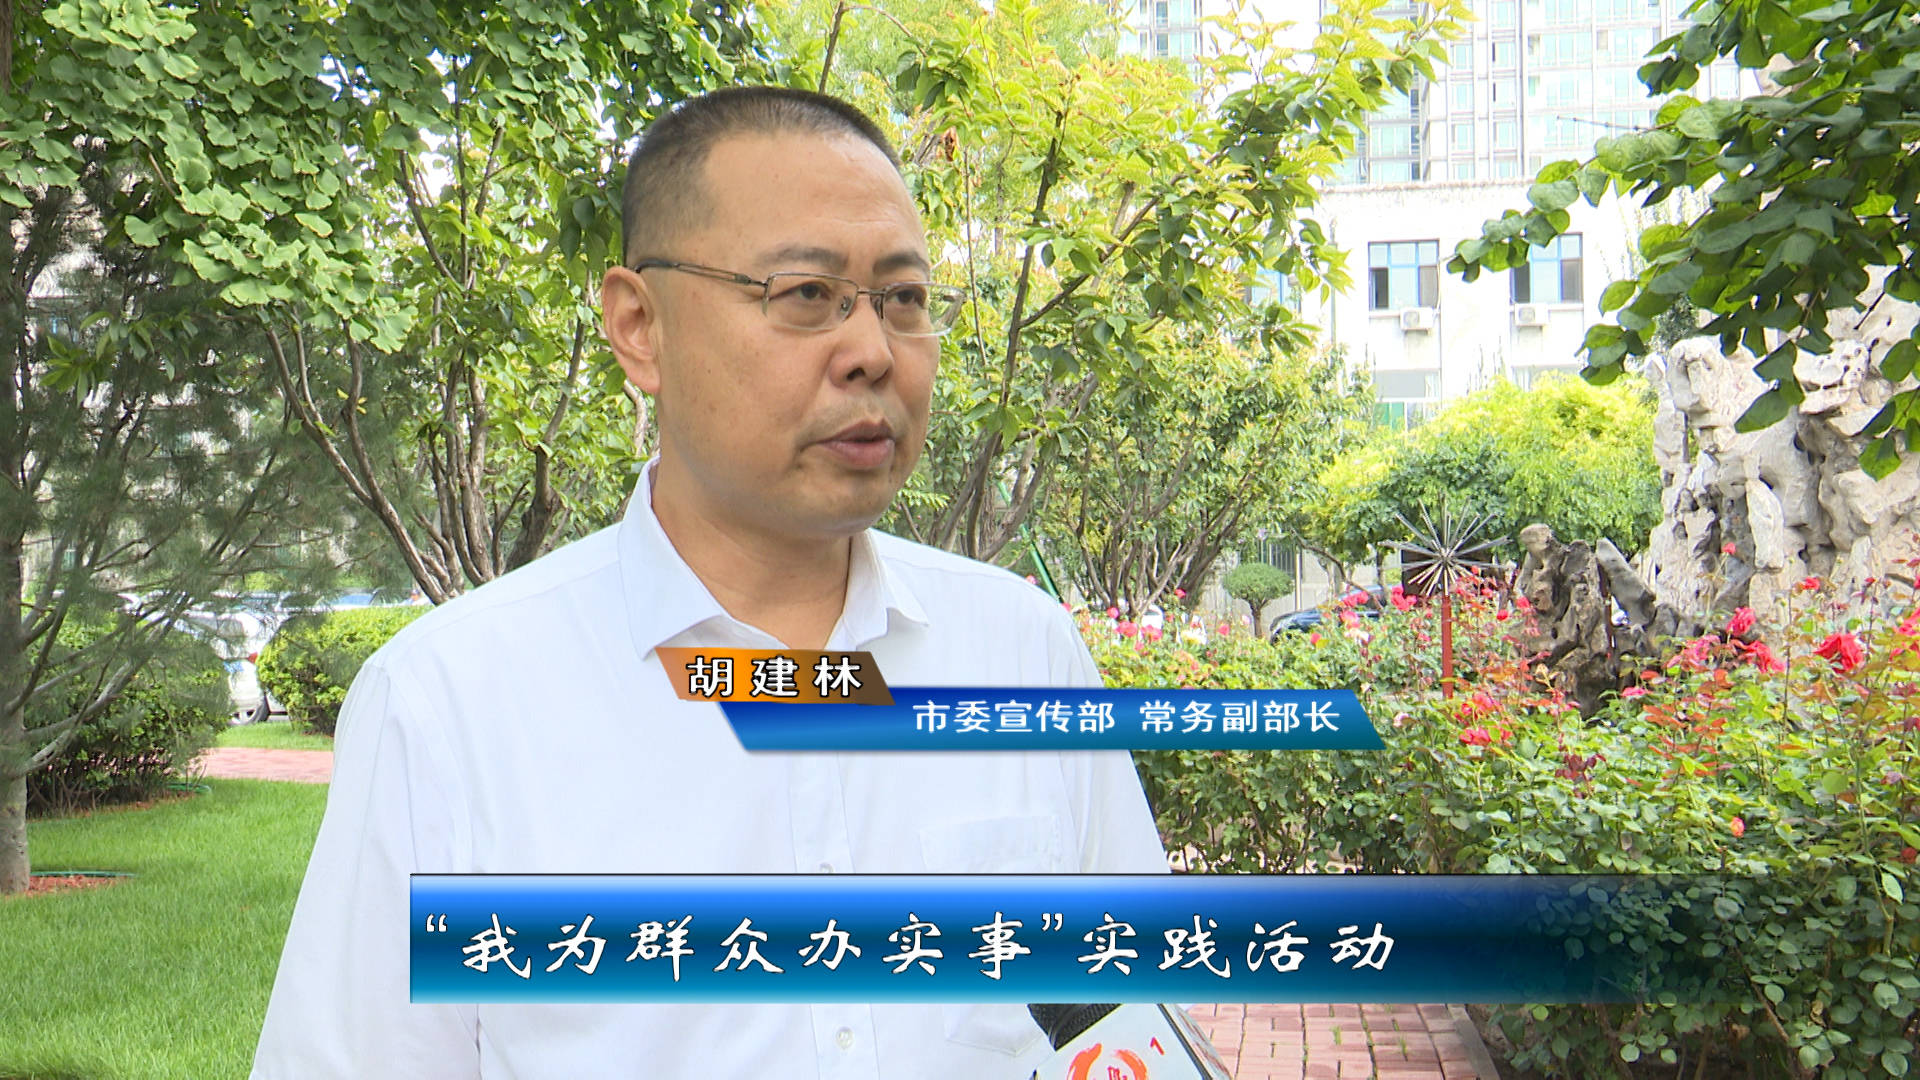 市委宣传部 常务副部长 胡建林:我们将深入开展我为群众办实事实践